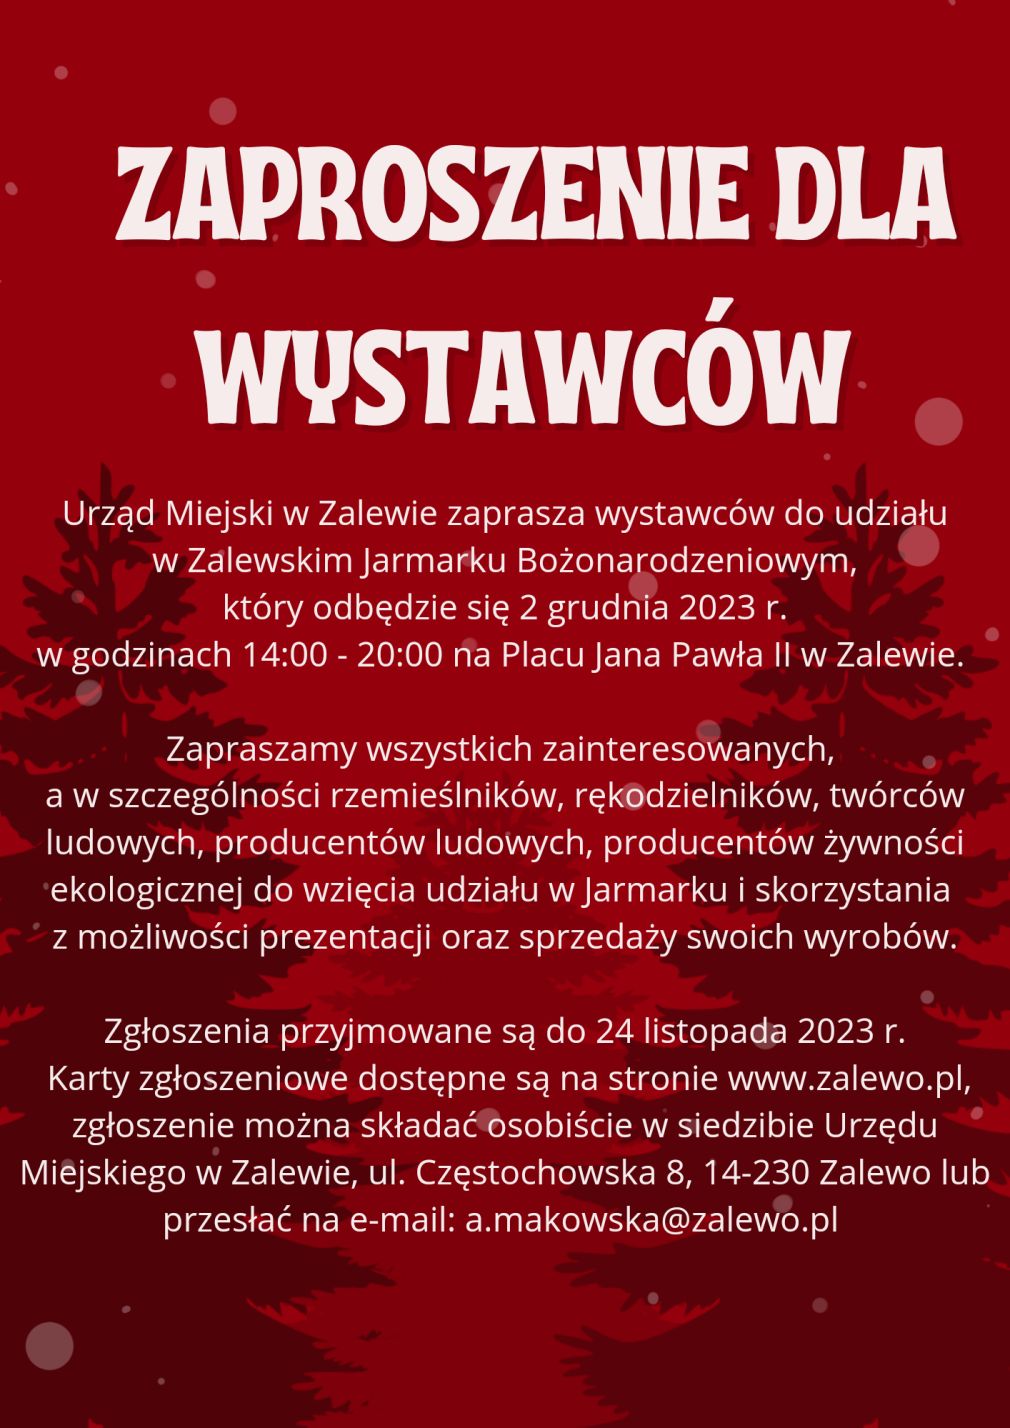 Zaproszenie dla wystawców do wzięcia udziału w Bożonarodzeniowym Jarmarku Zalewskim